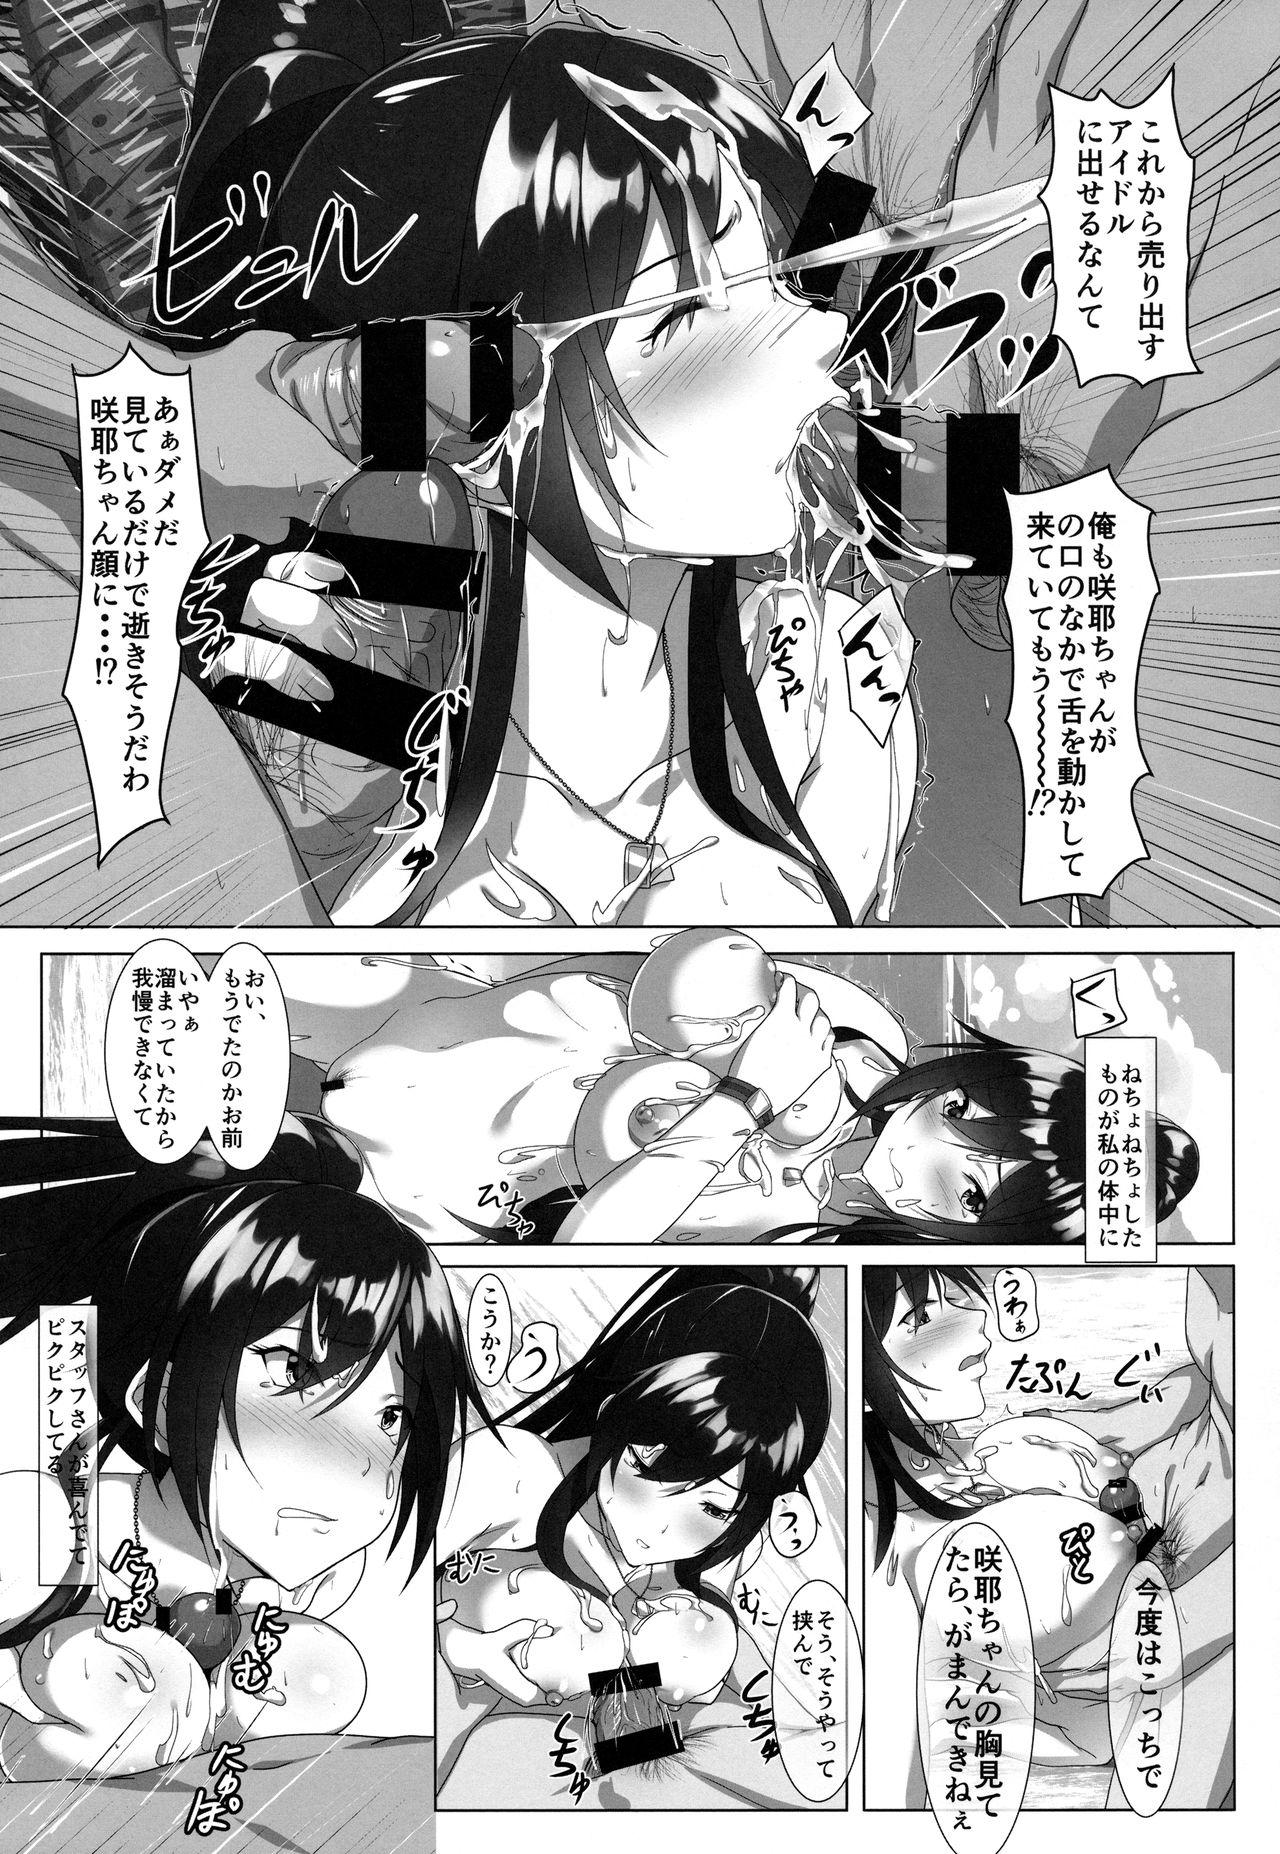 Pauzudo Shirase-san no Fantasize about Ecchi - The idolmaster Gay Money - Page 12